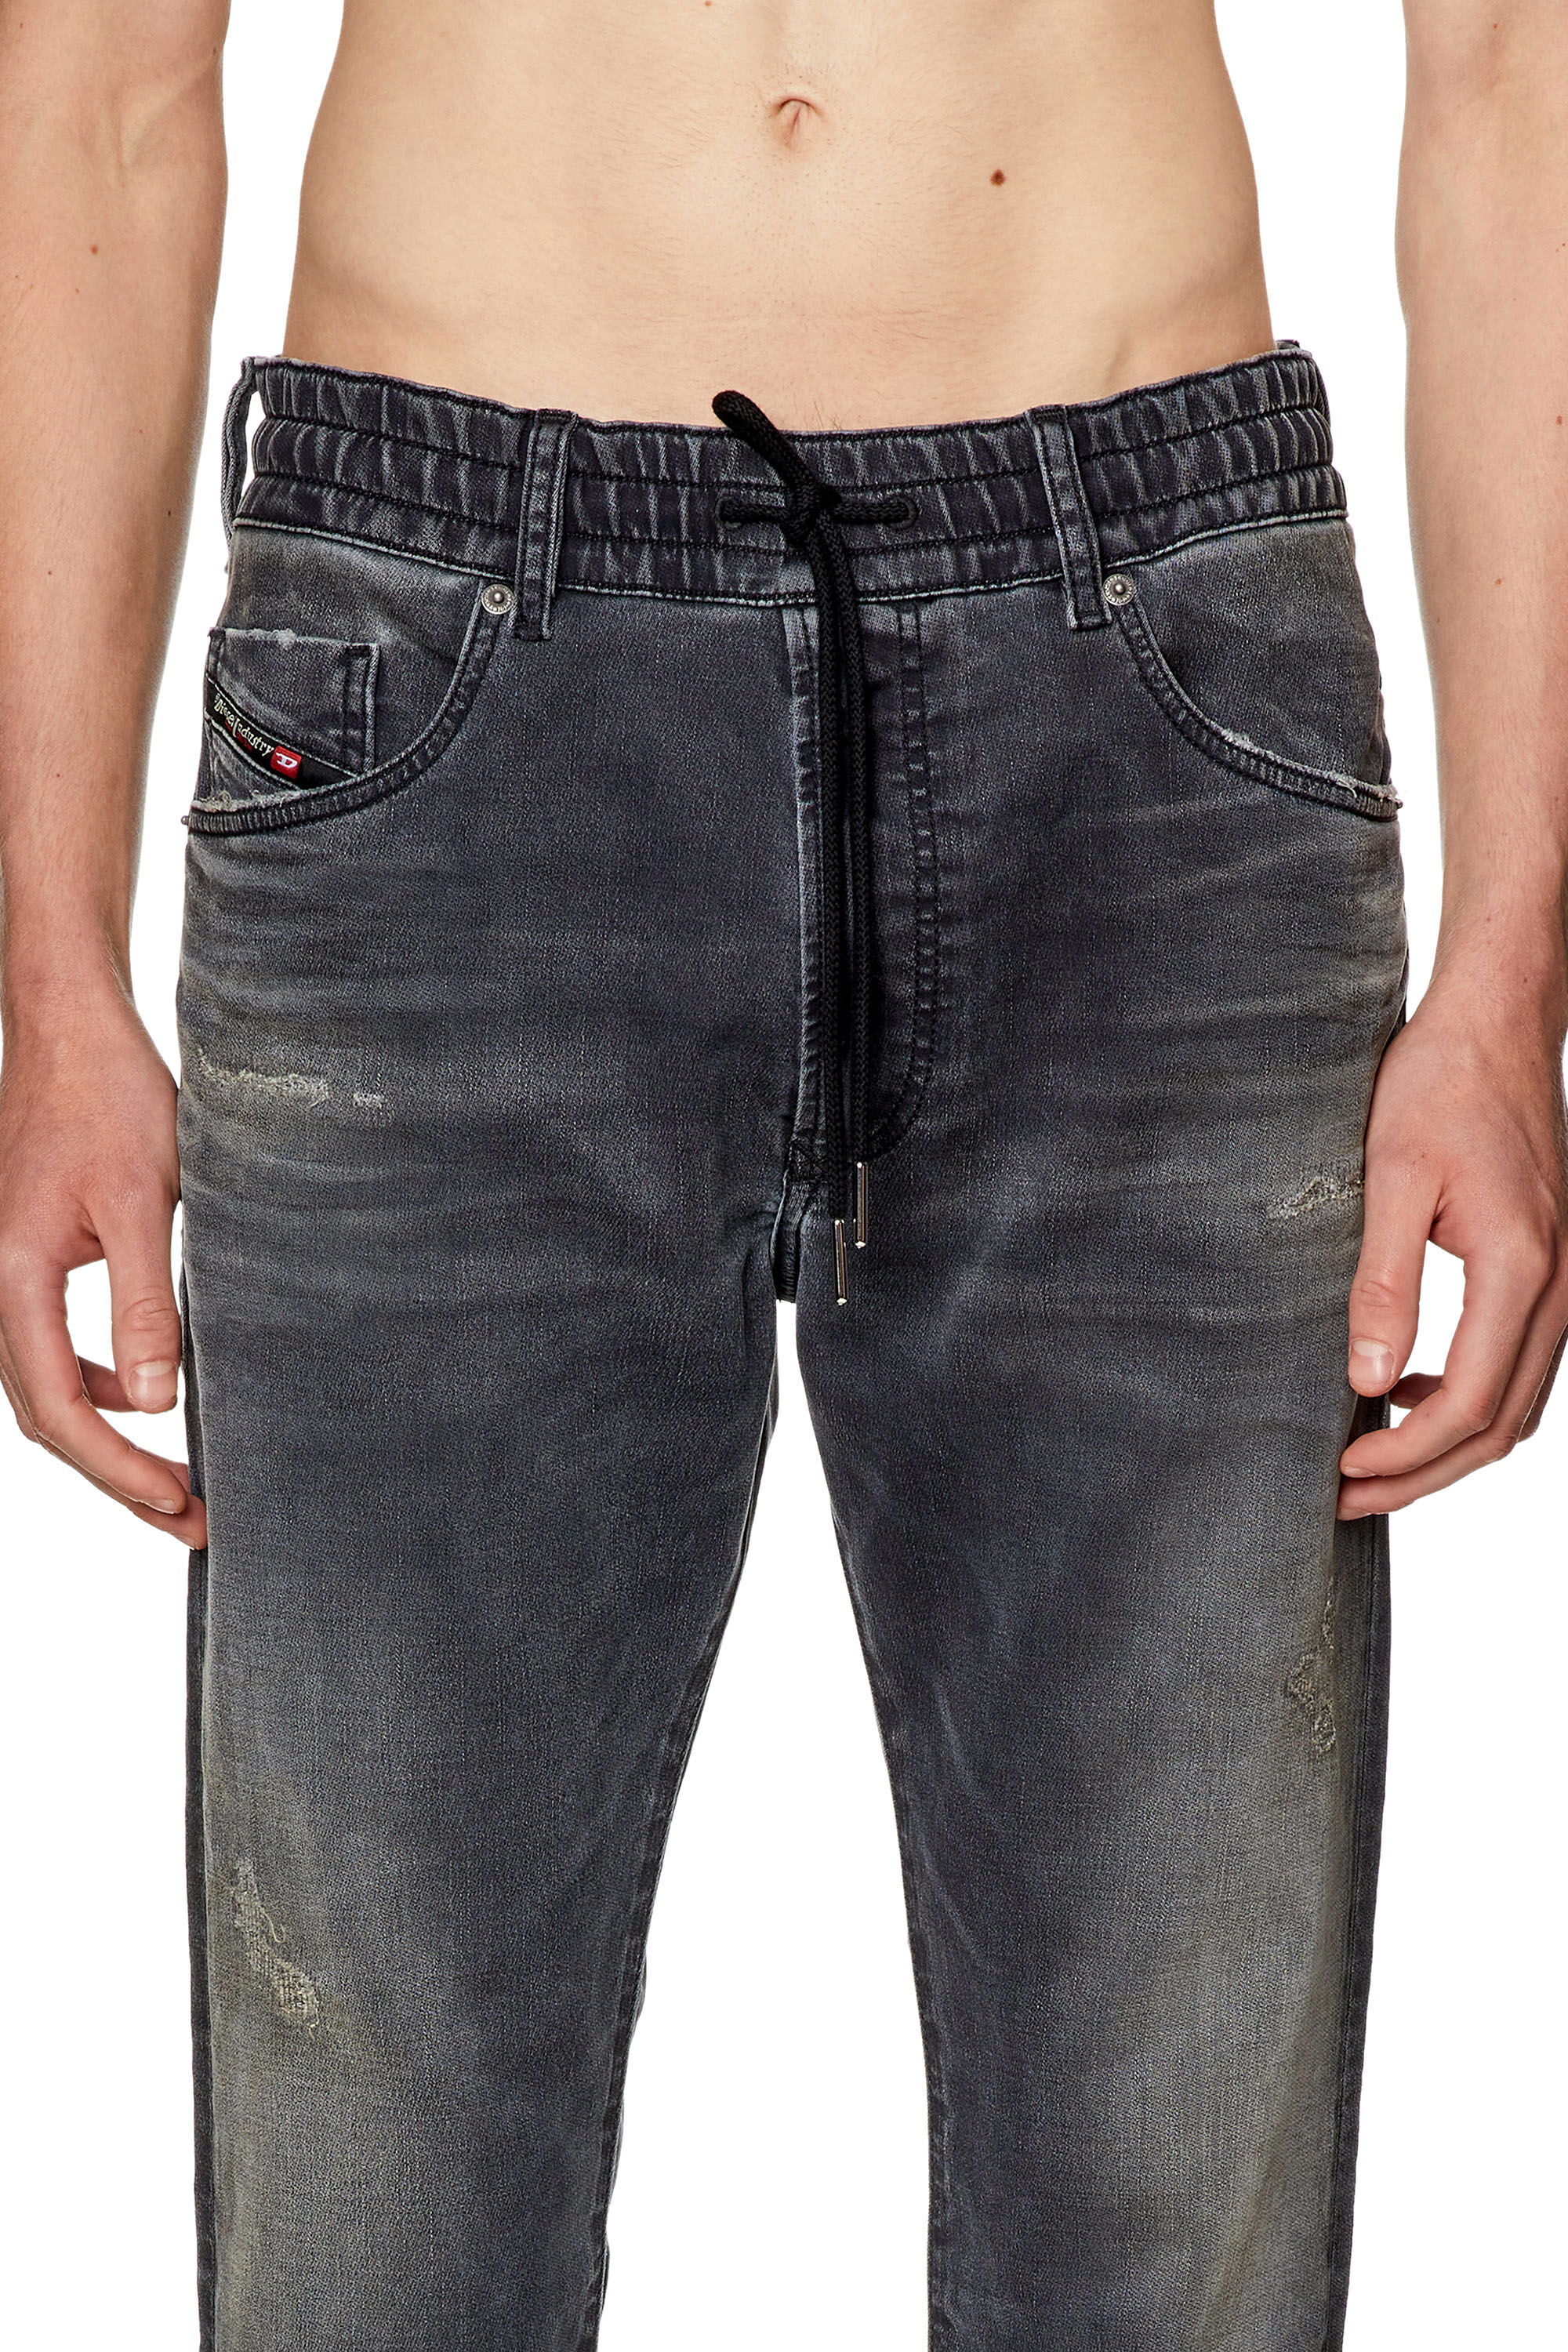 Men's Tapered Jeans | Black/Dark grey | Diesel 2030 D-Krooley